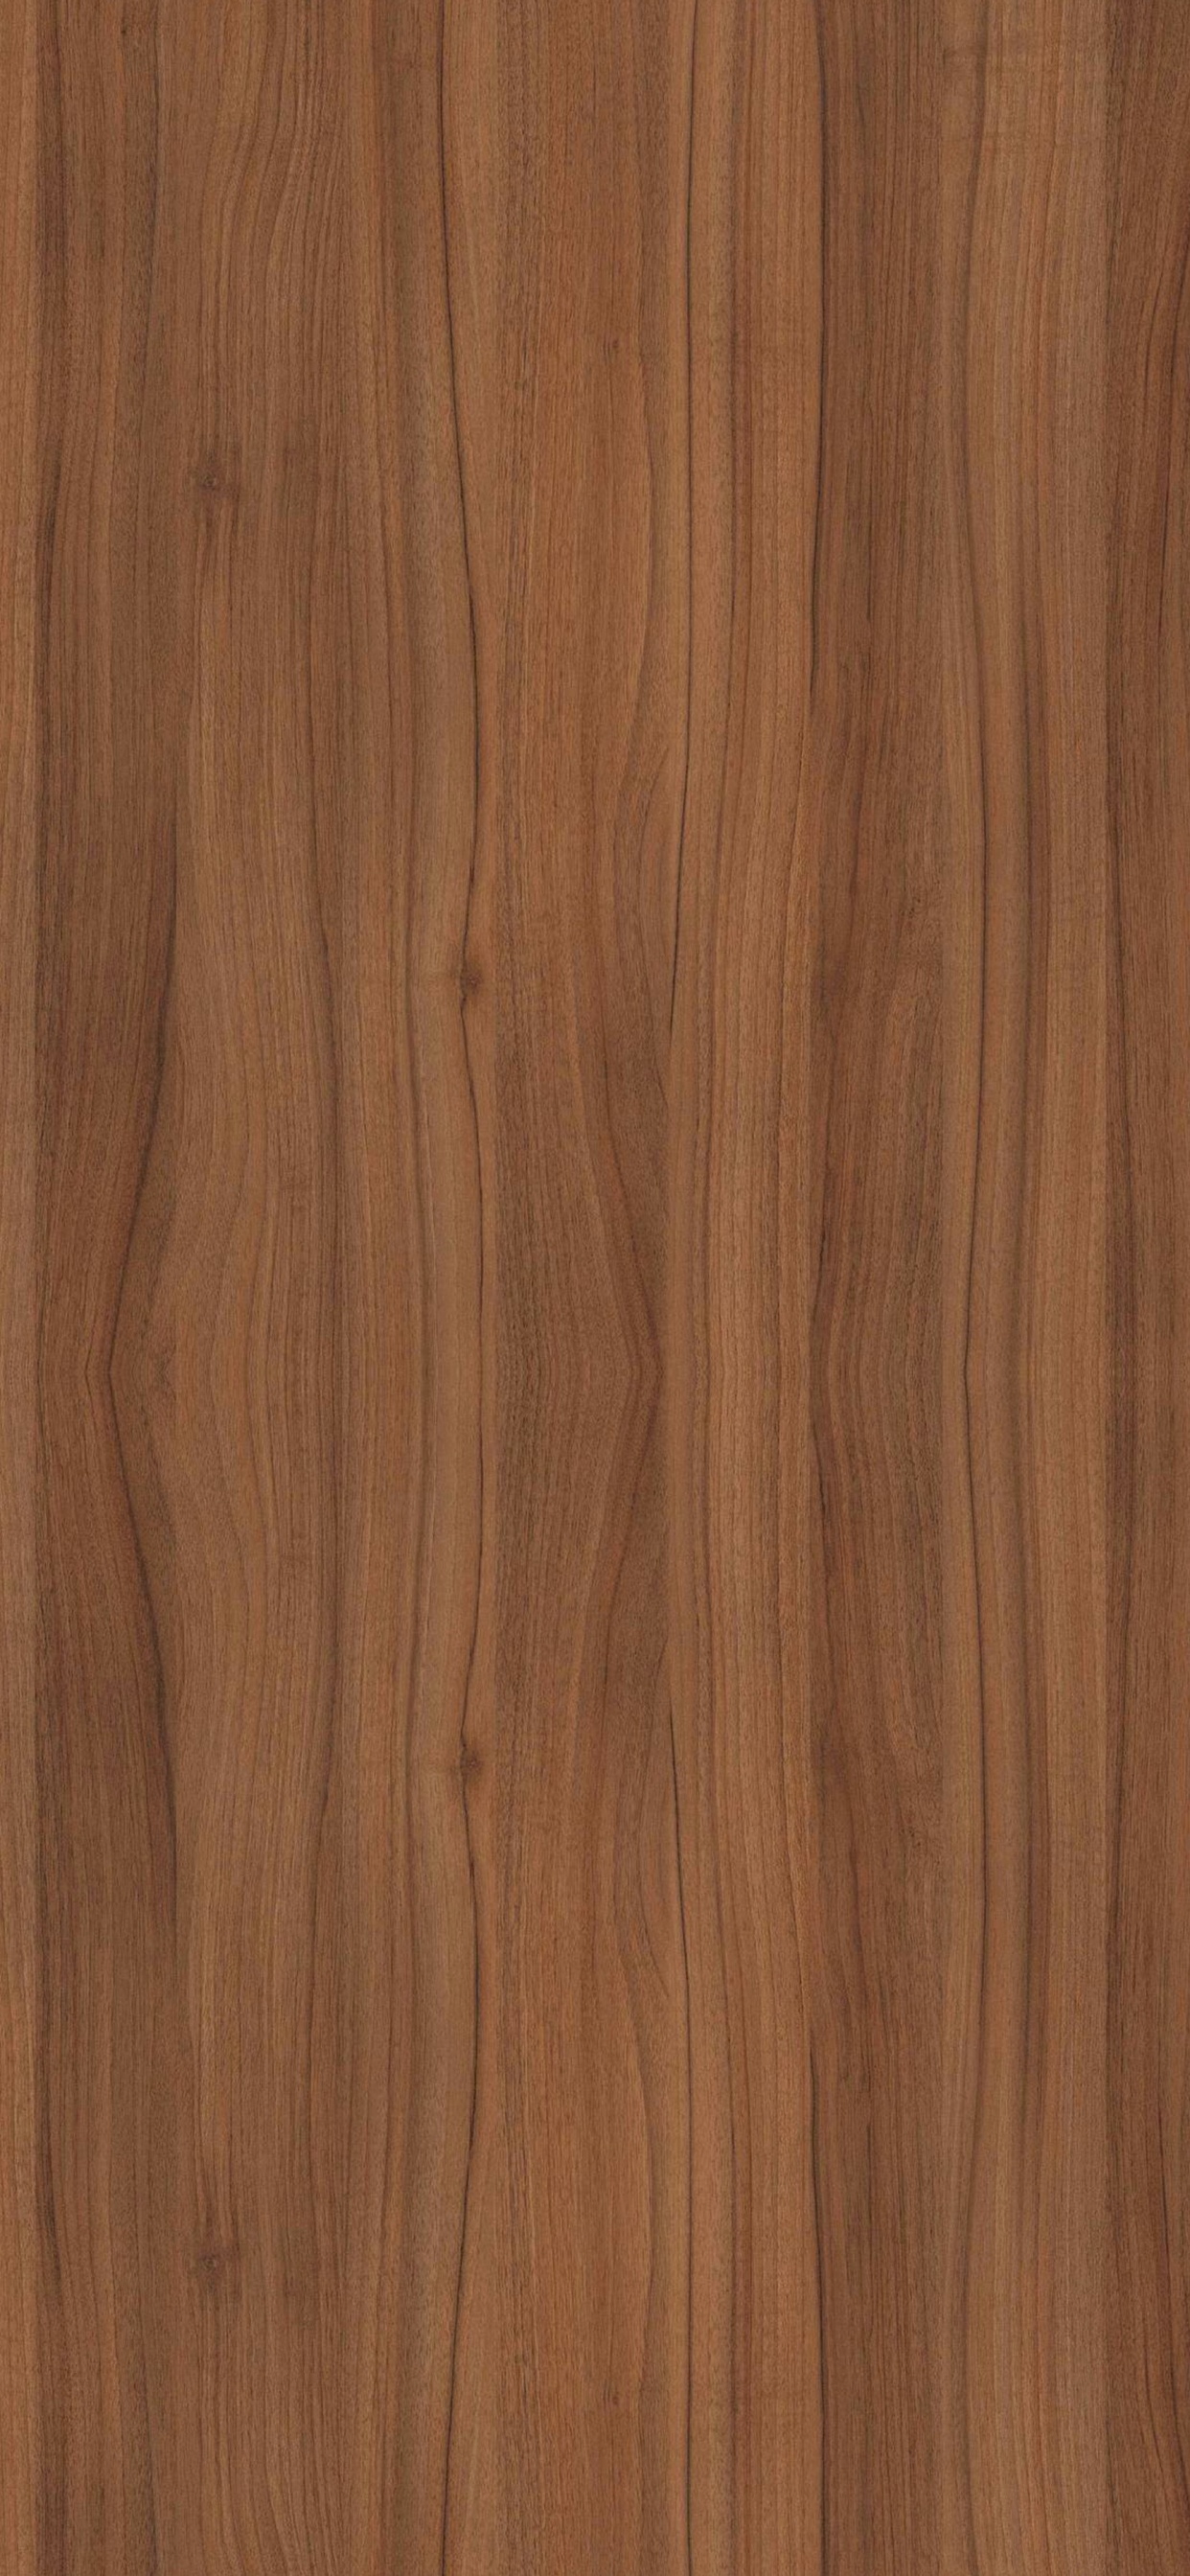 Brown Wooden Parquet Floor Tiles. Wallpaper in 1242x2688 Resolution